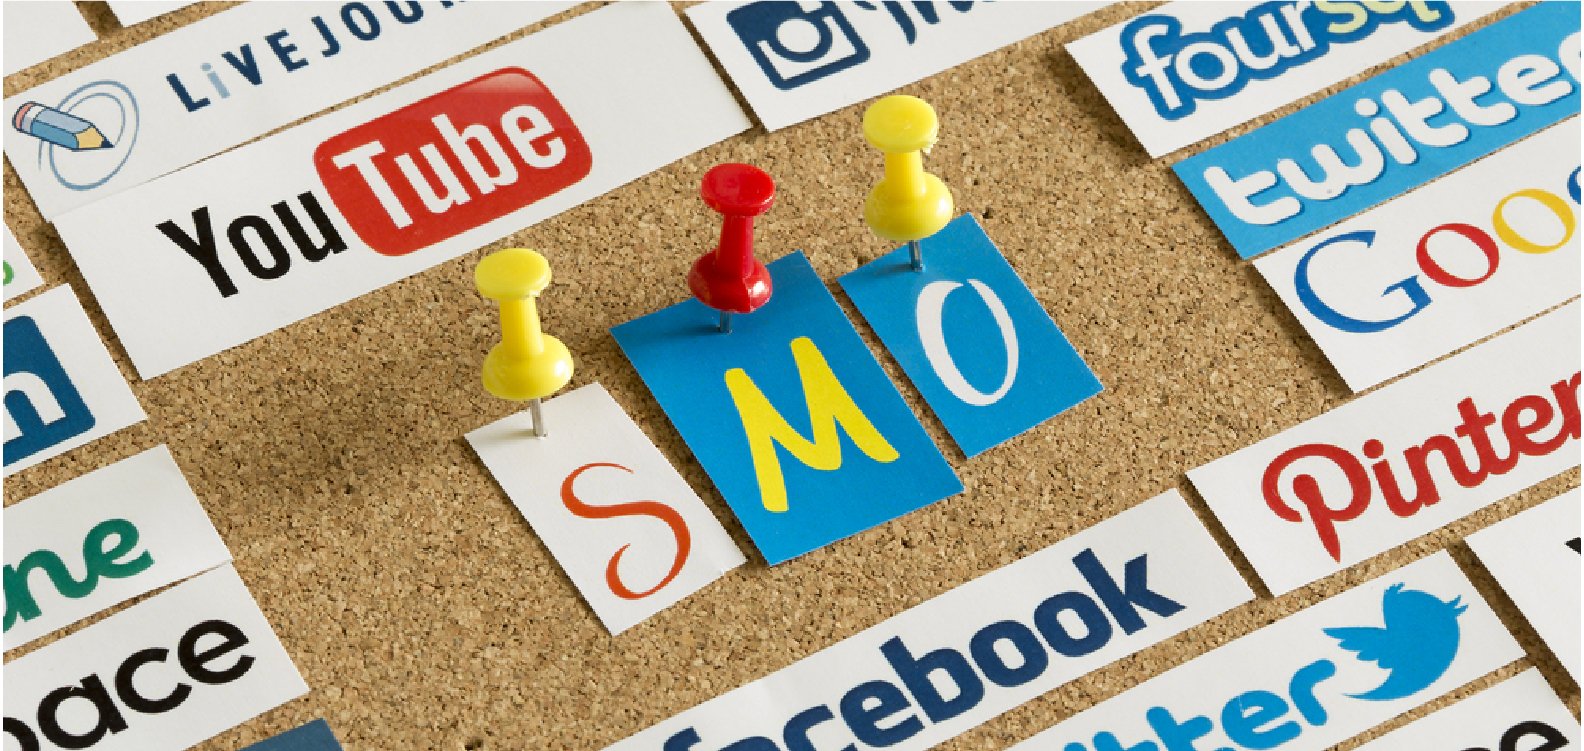 Social Media Optimisations Services in Pune & Mumbai